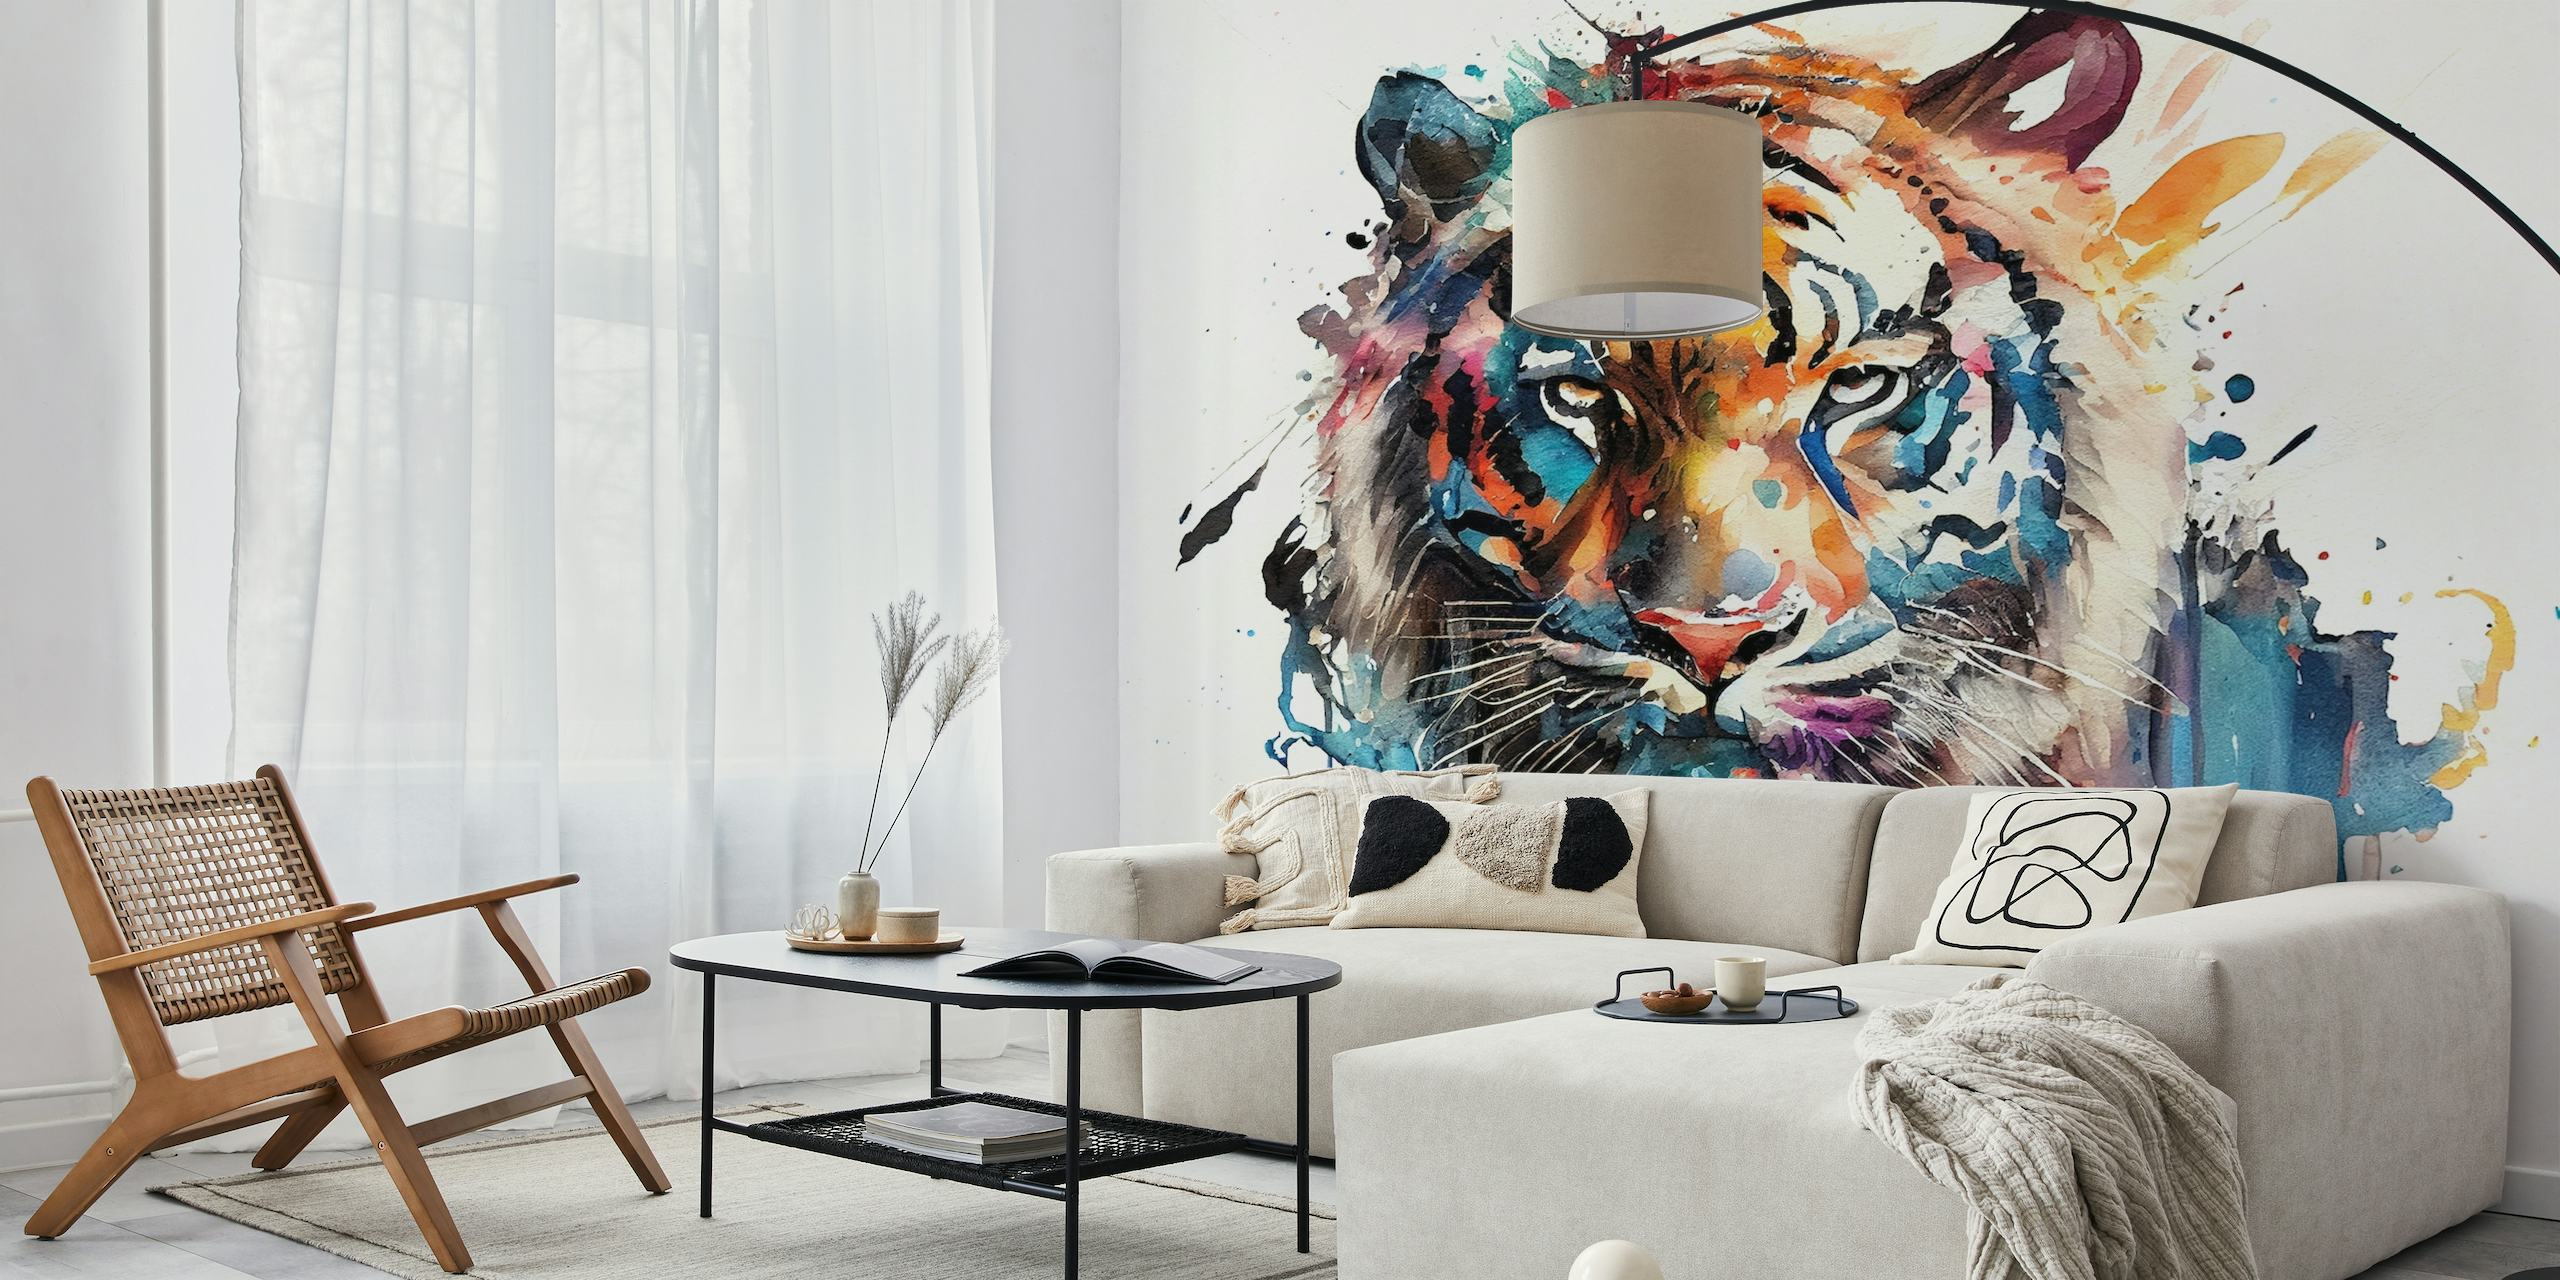 Un dipinto ad acquerello di una tigre con un mix di colori vivaci su uno sfondo bianco, trasformato in un murale.